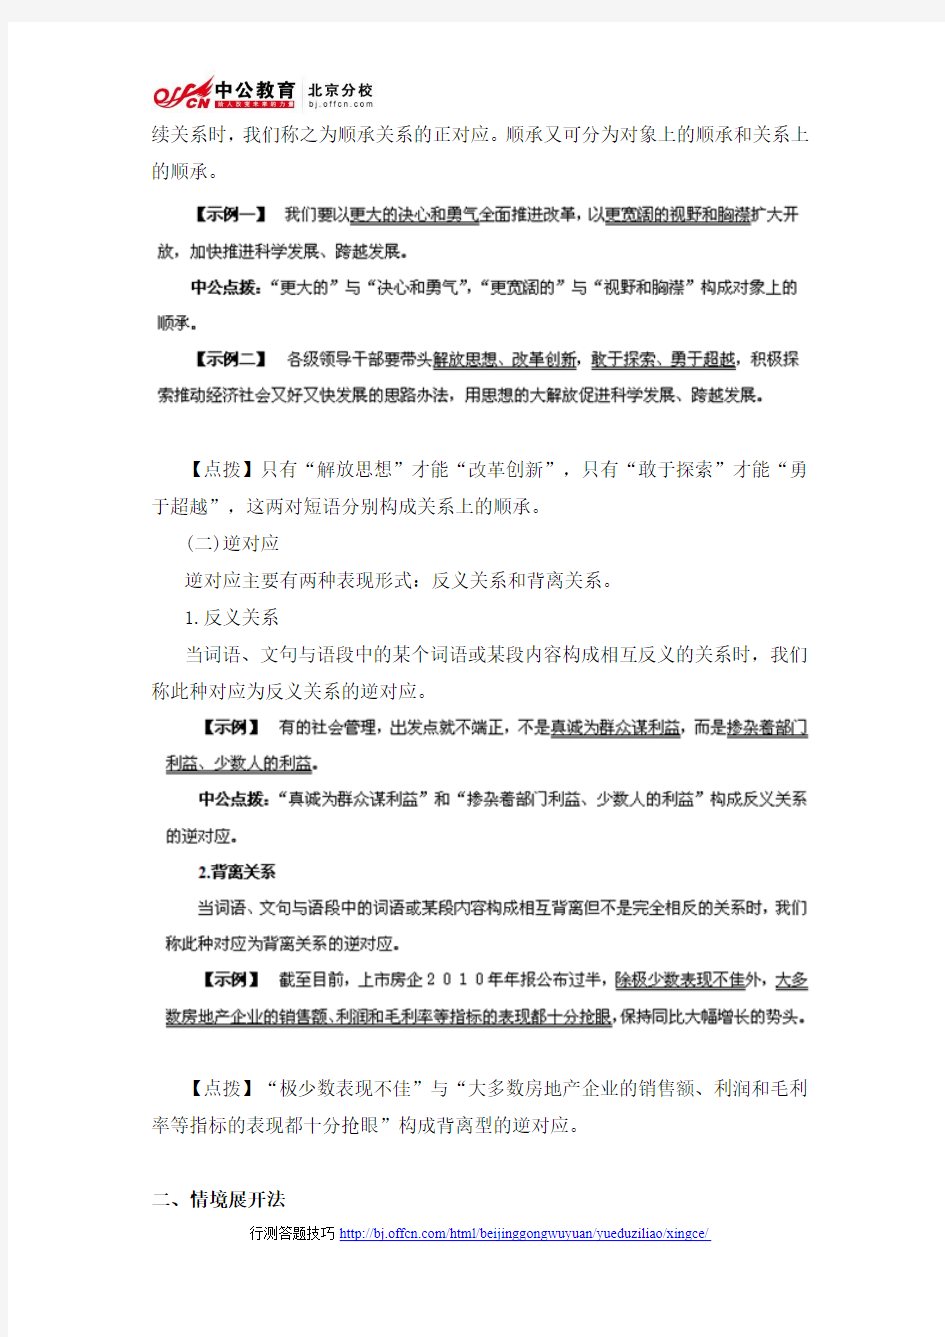 2014年北京公务员考试行测答题技巧：妙招破解逻辑填空